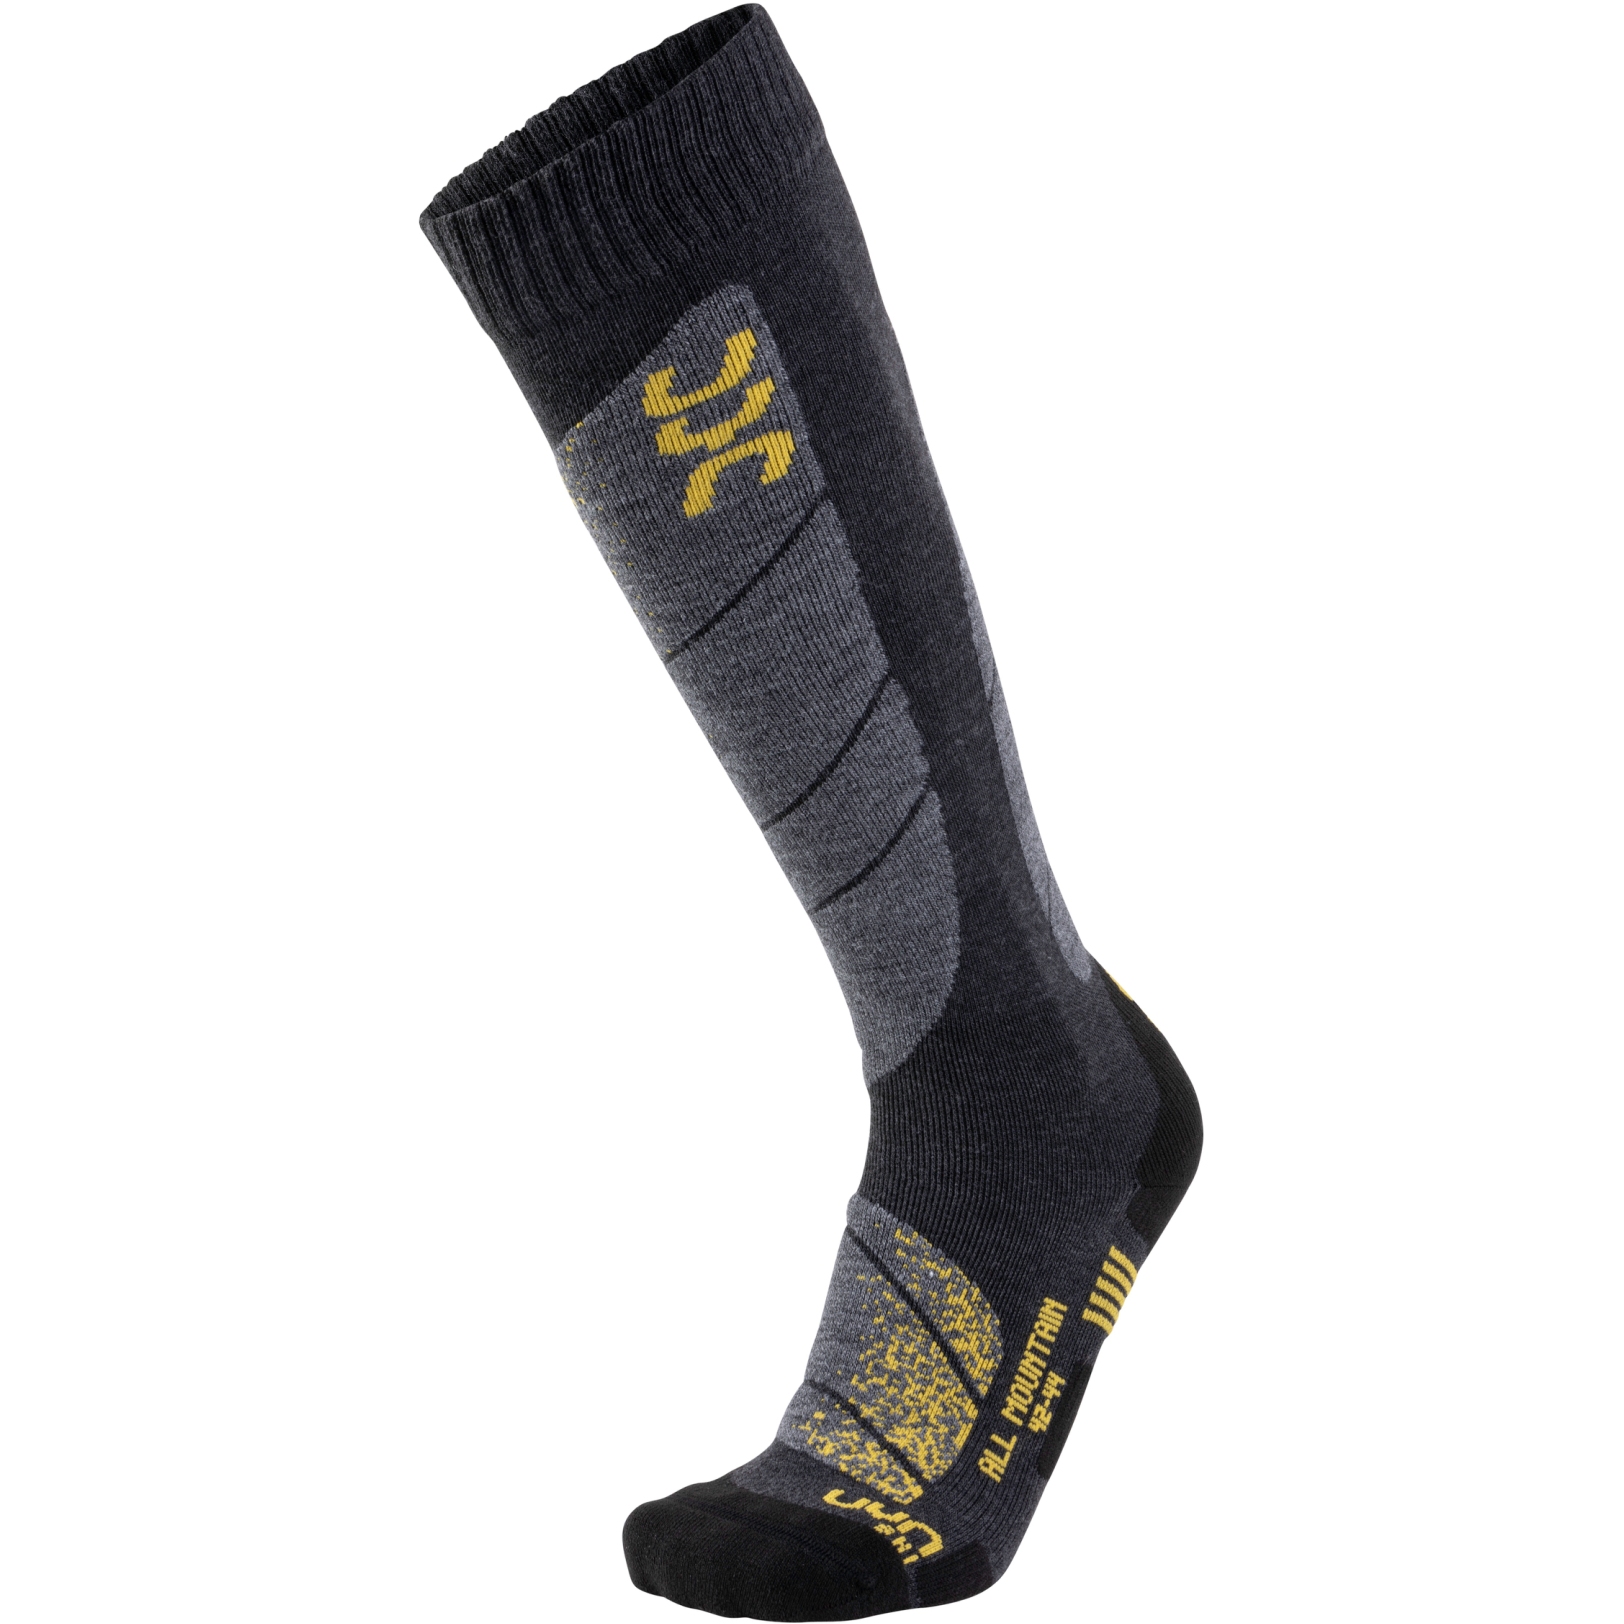 Produktbild von UYN Ski All Mountain Socken Herren - Anthracite Melange/Yellow